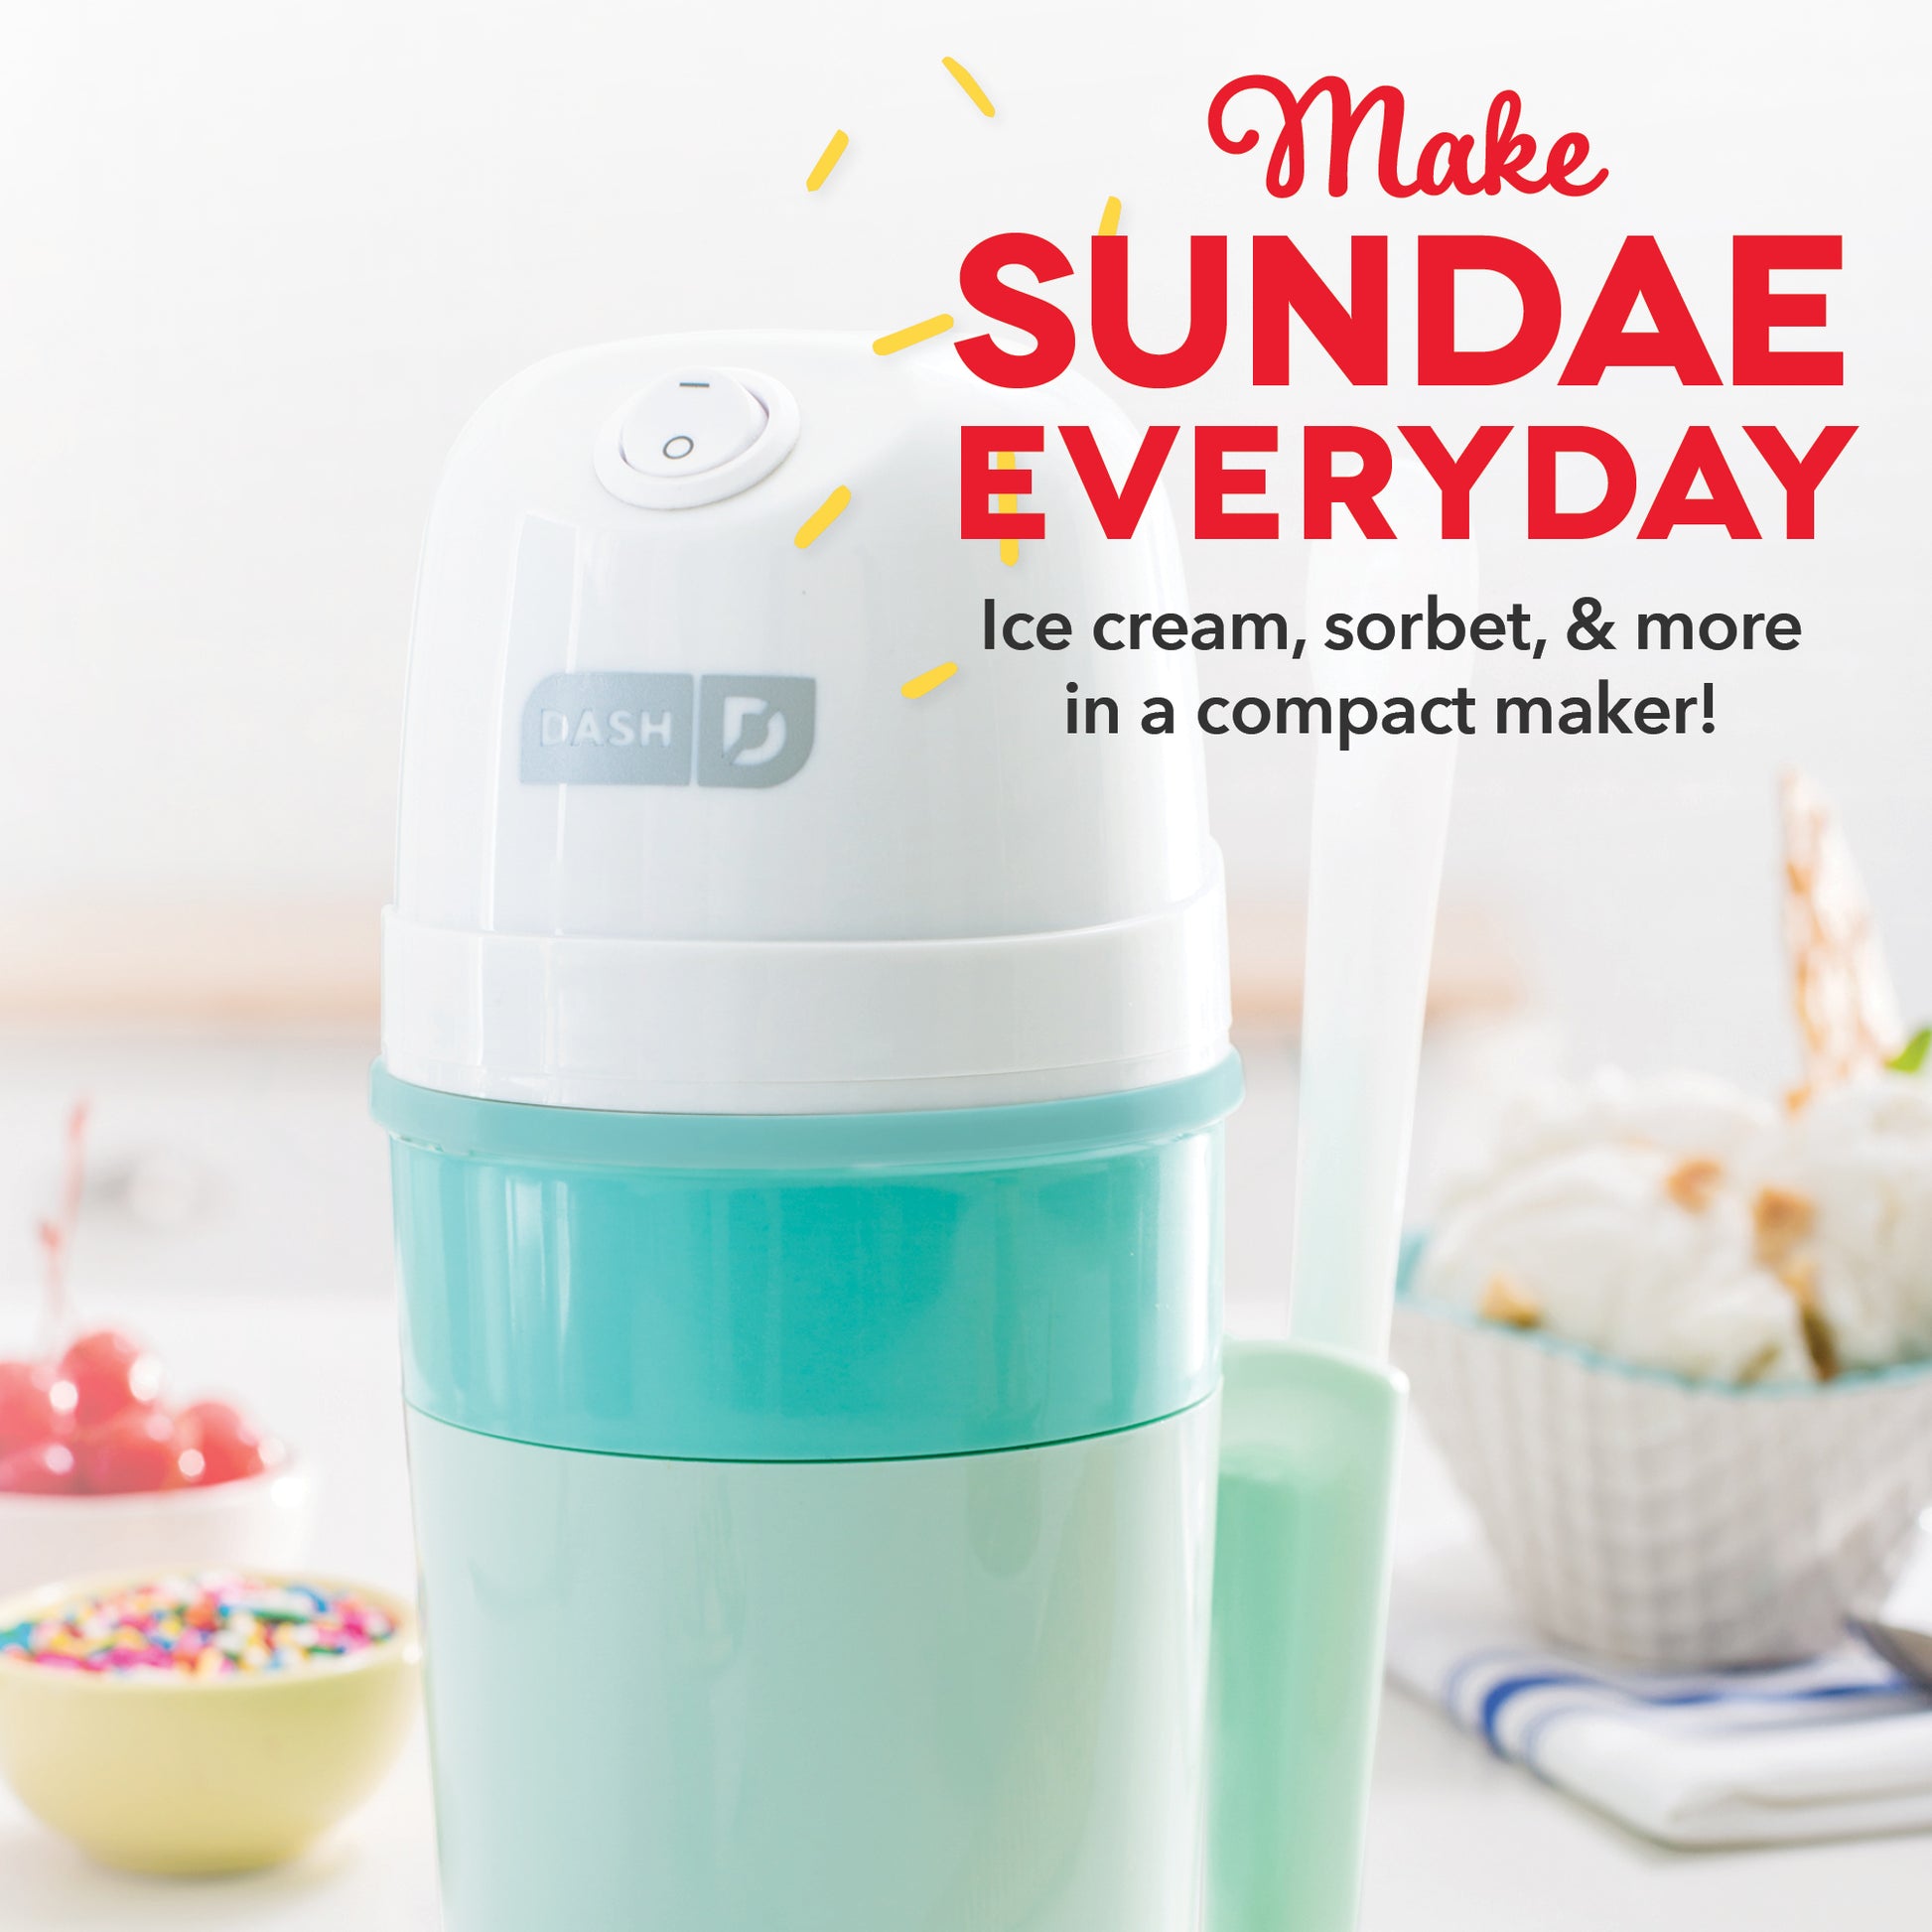 Dash Everyday Ice Cream Maker - Aqua